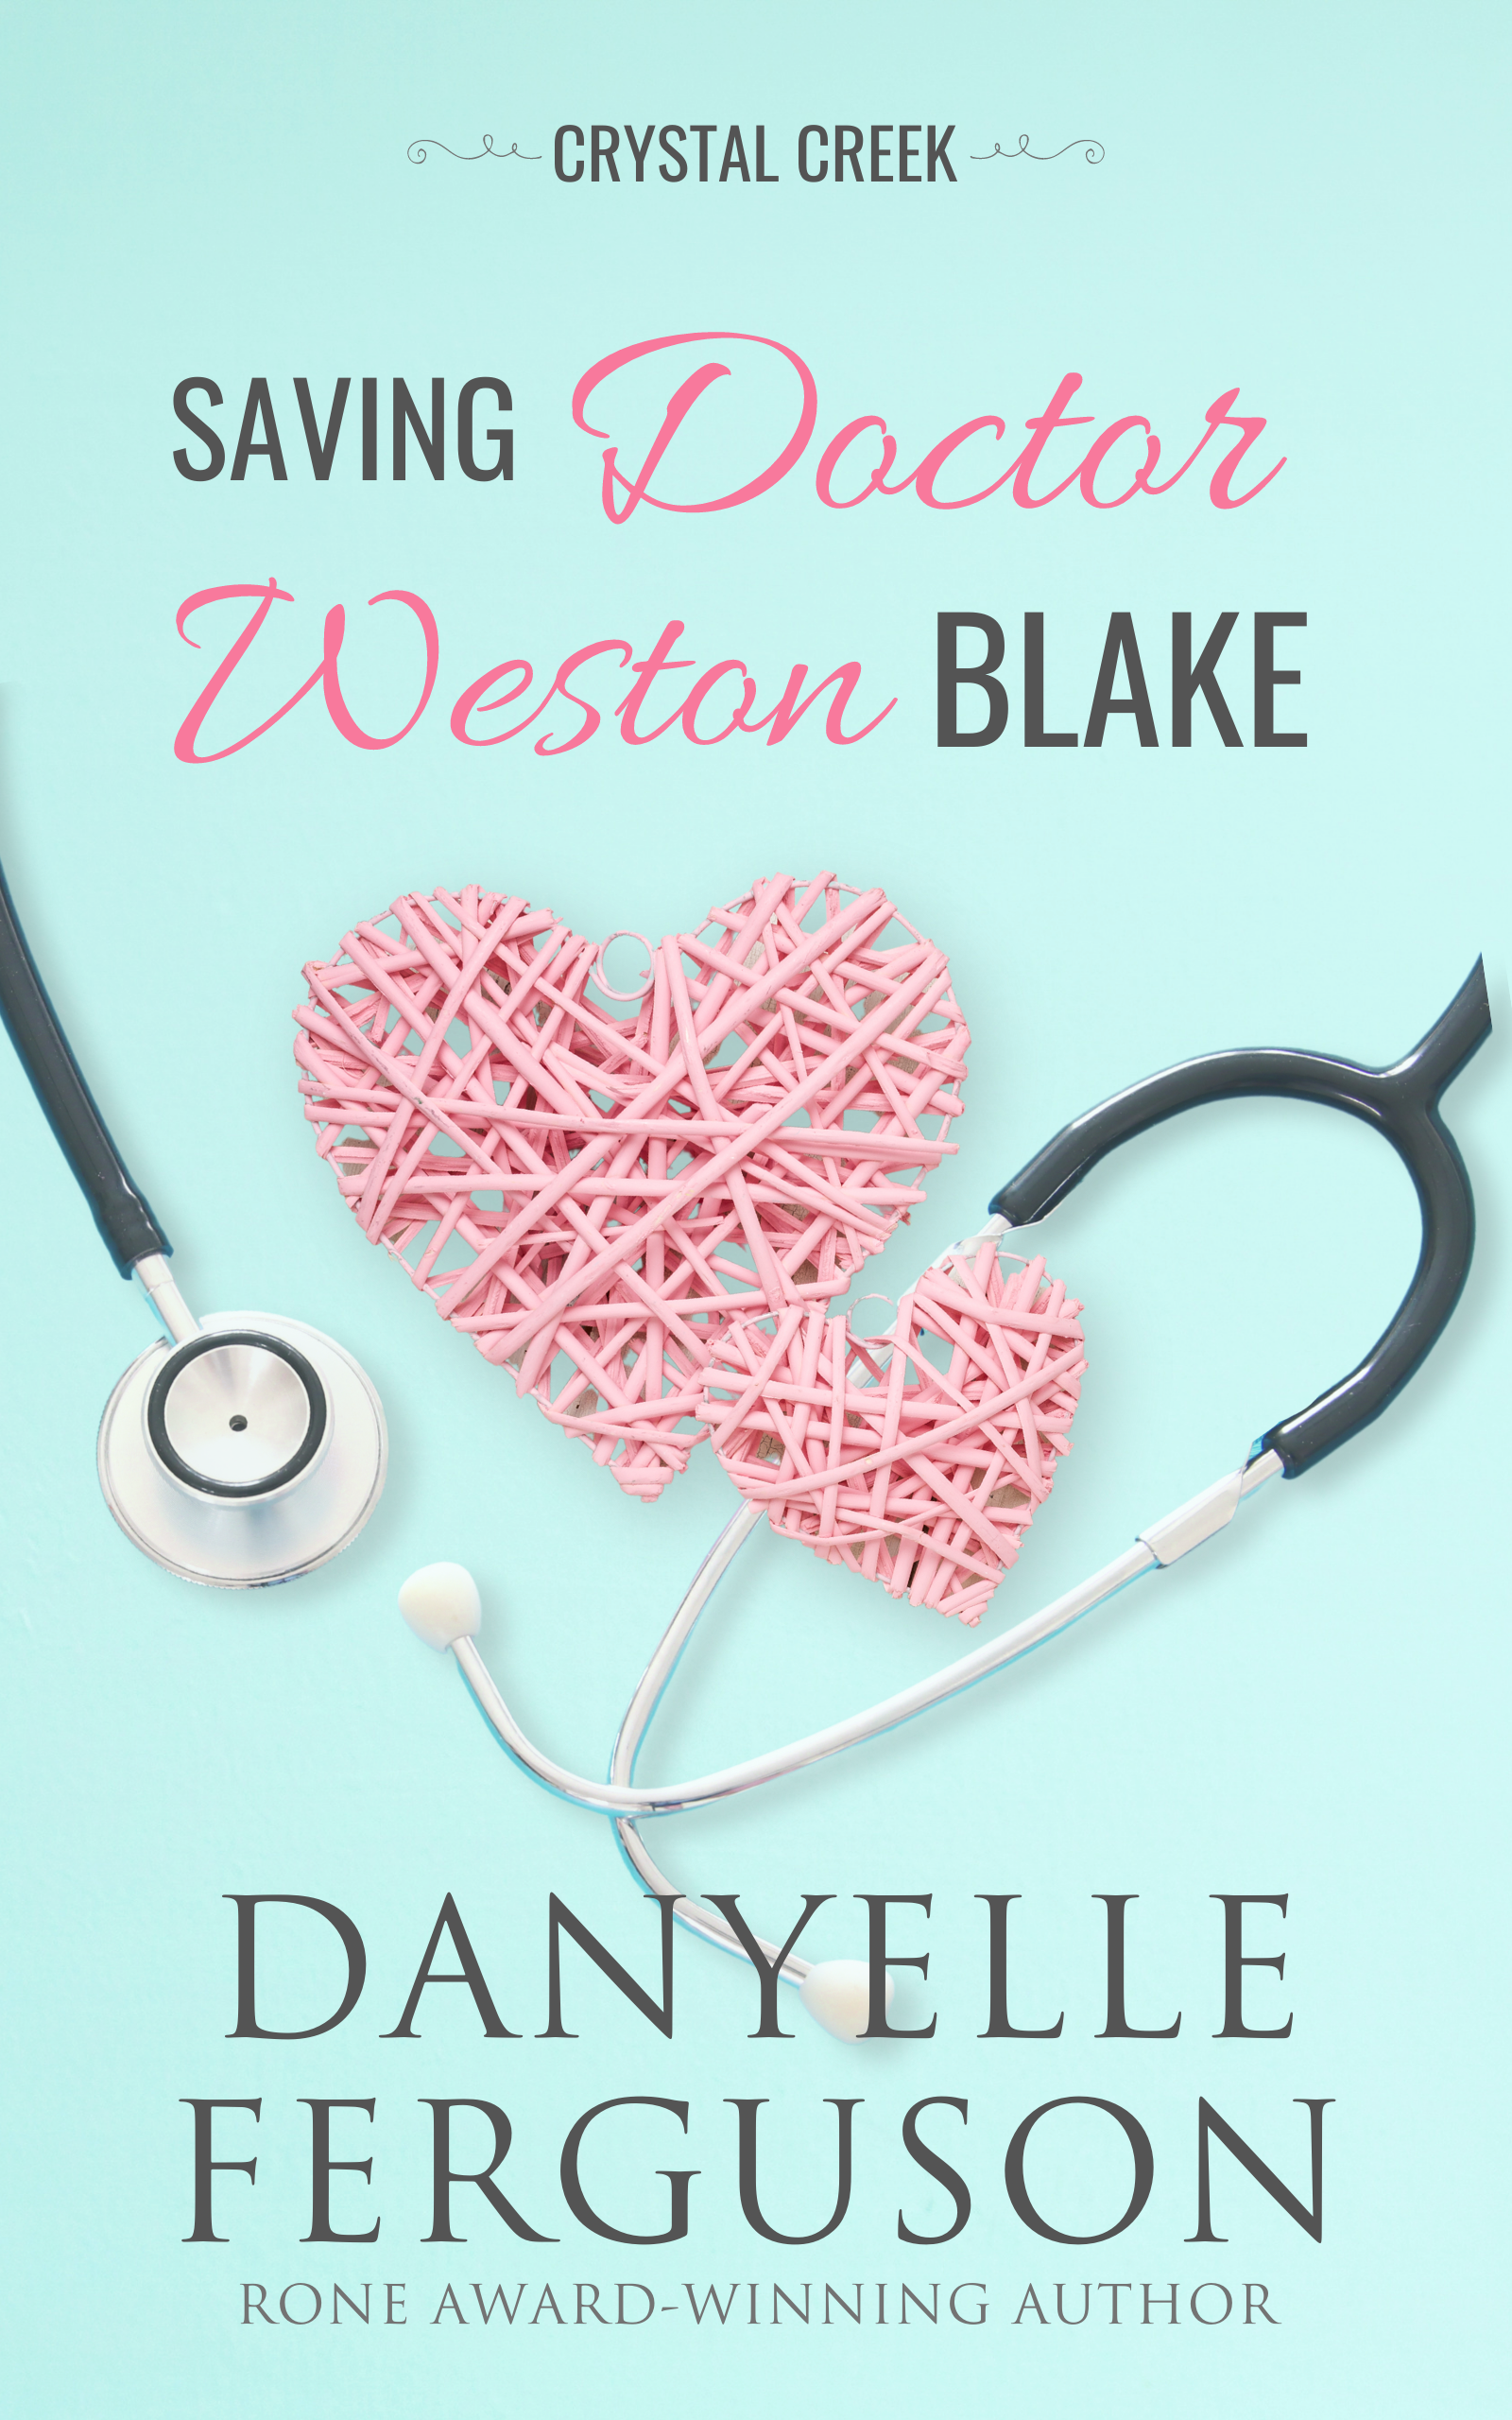 Saving Dr. Weston Blake